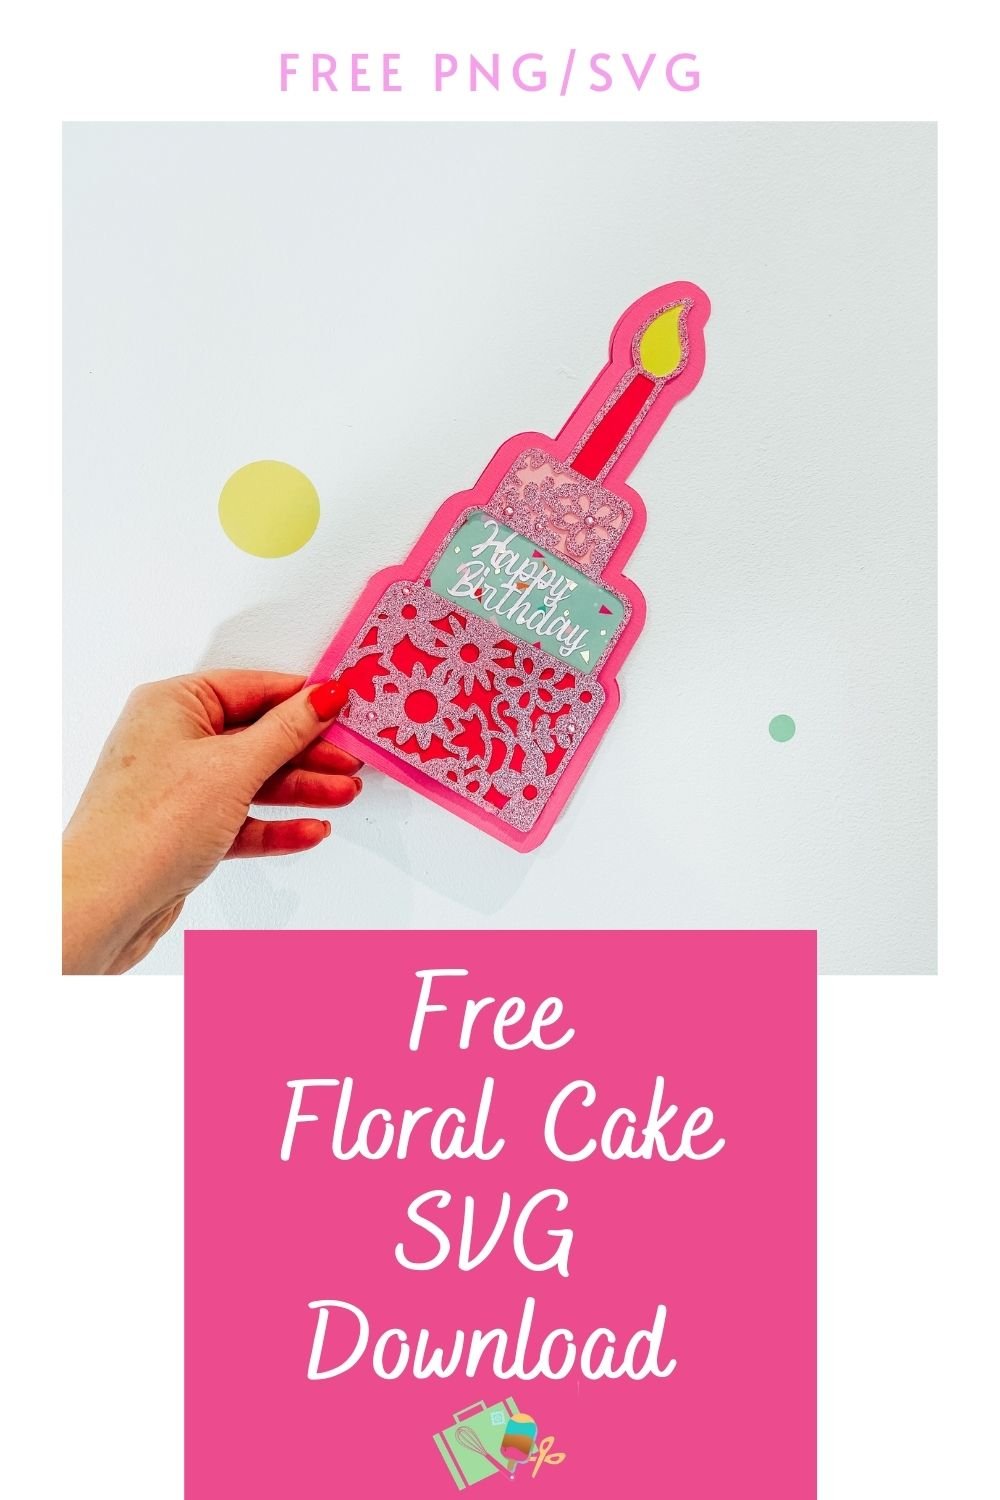 Free Floral Cake SVG Download